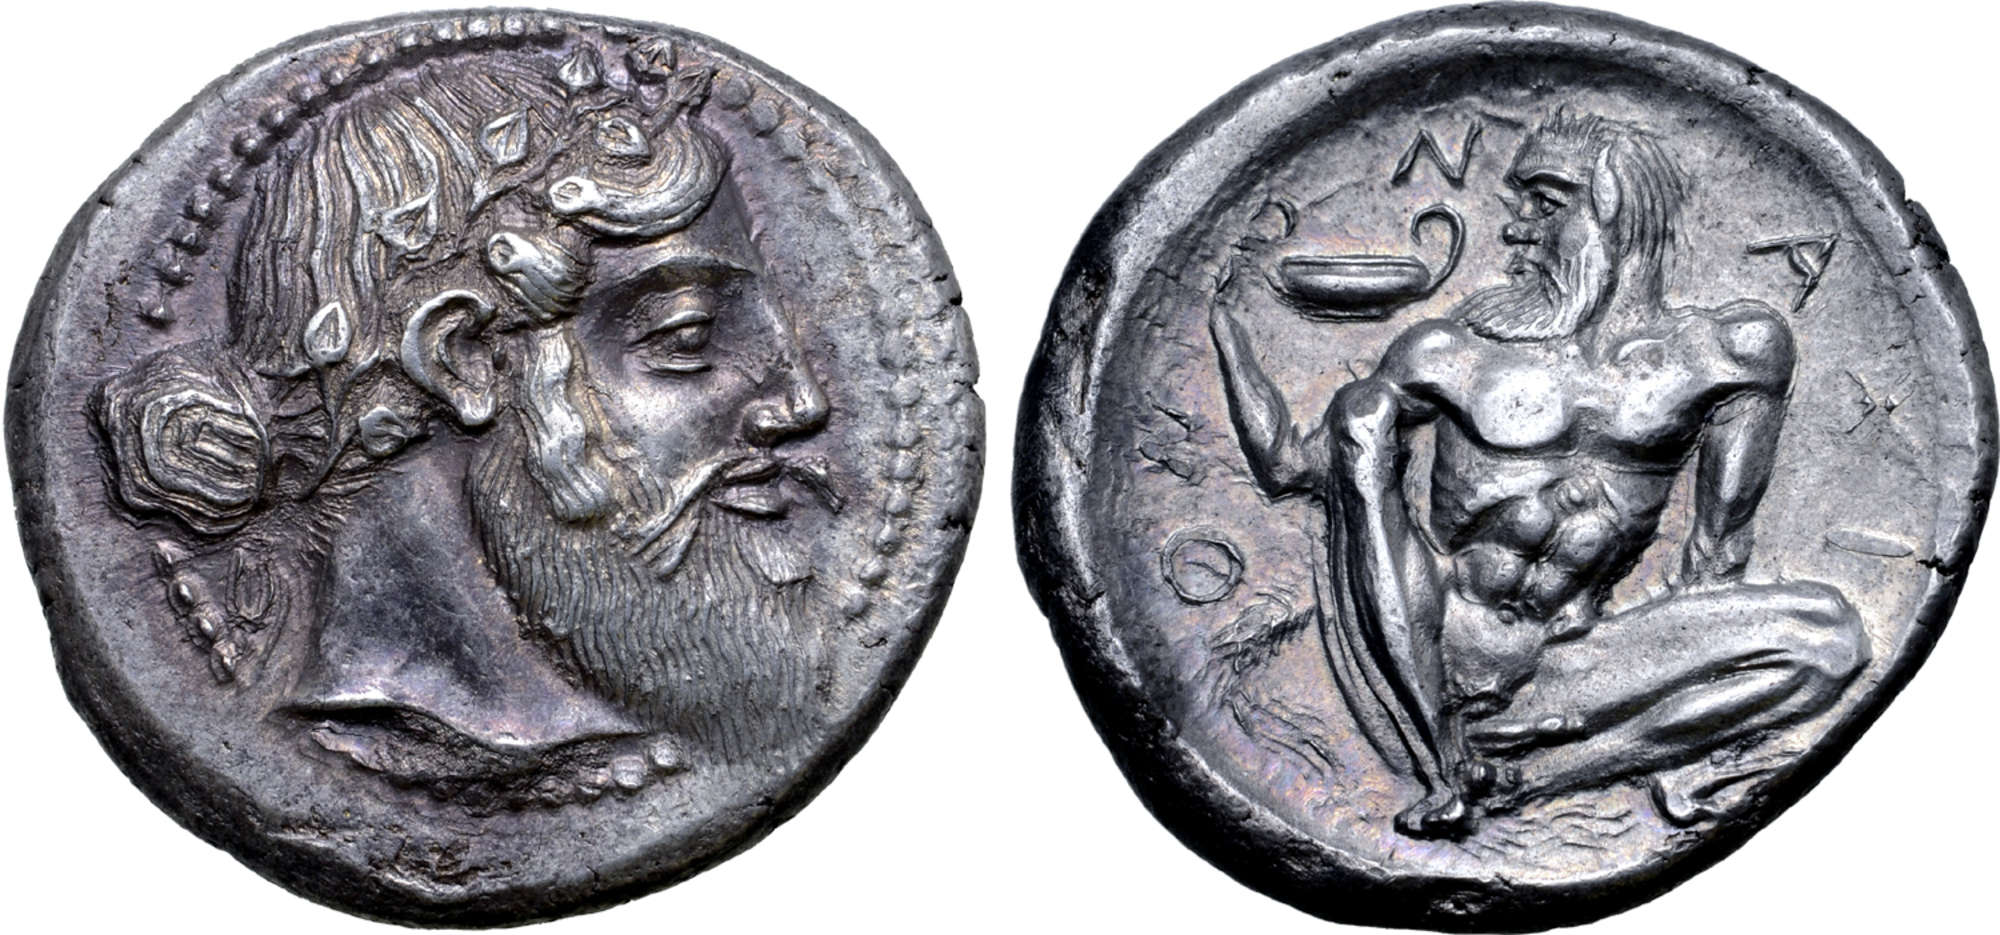 Το ασημένιο νόμισμα της Σικελικής Νάξου με τον Διόνυσο και τον Σειληνό 